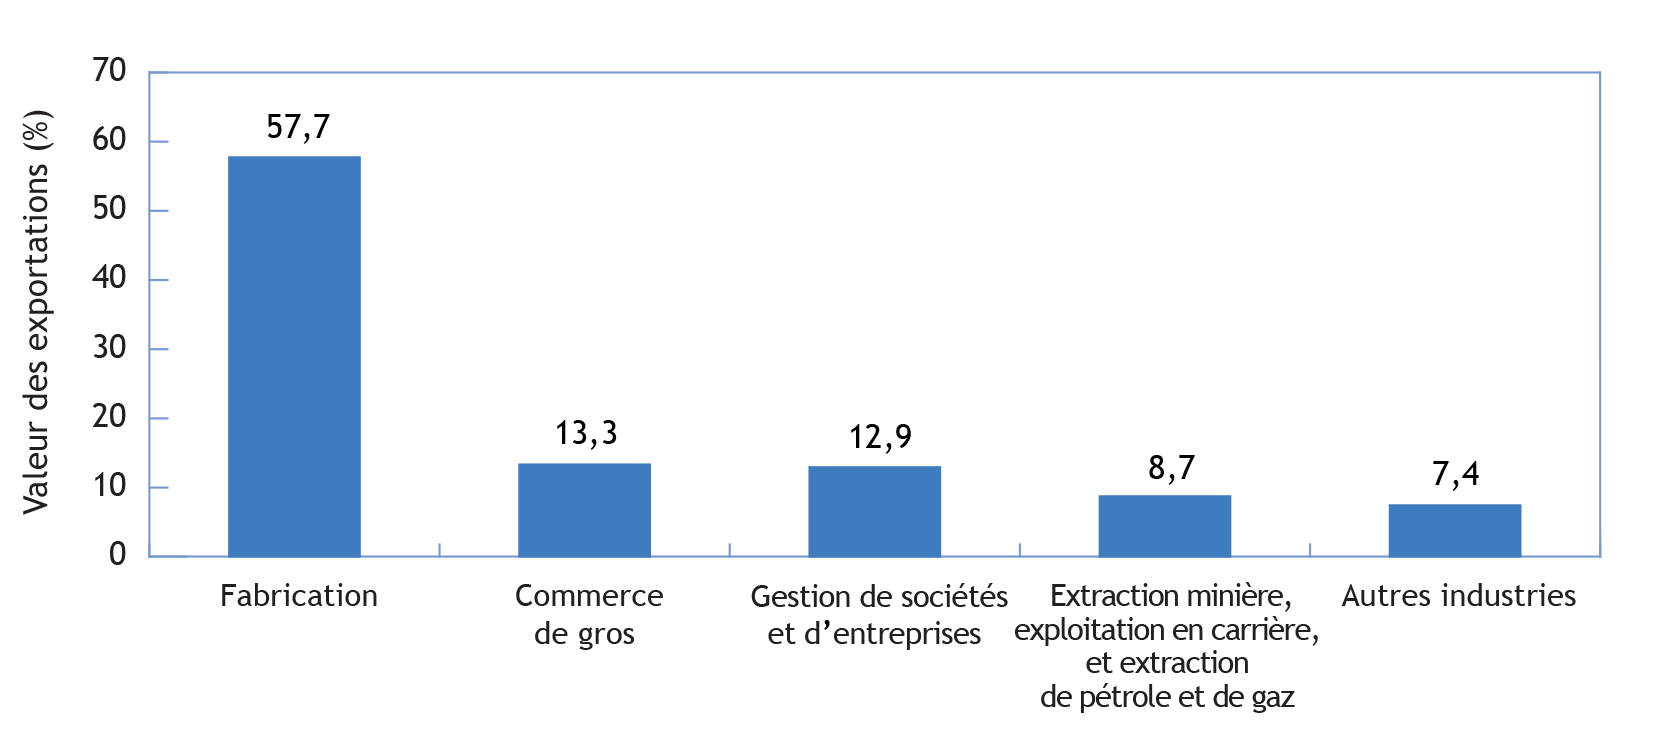 Graphique à barres illustrant les principaux secteurs exportateurs de biens selon la valeur des exportations, Canada, 2017 (la description détaillée se trouve sous l'image)